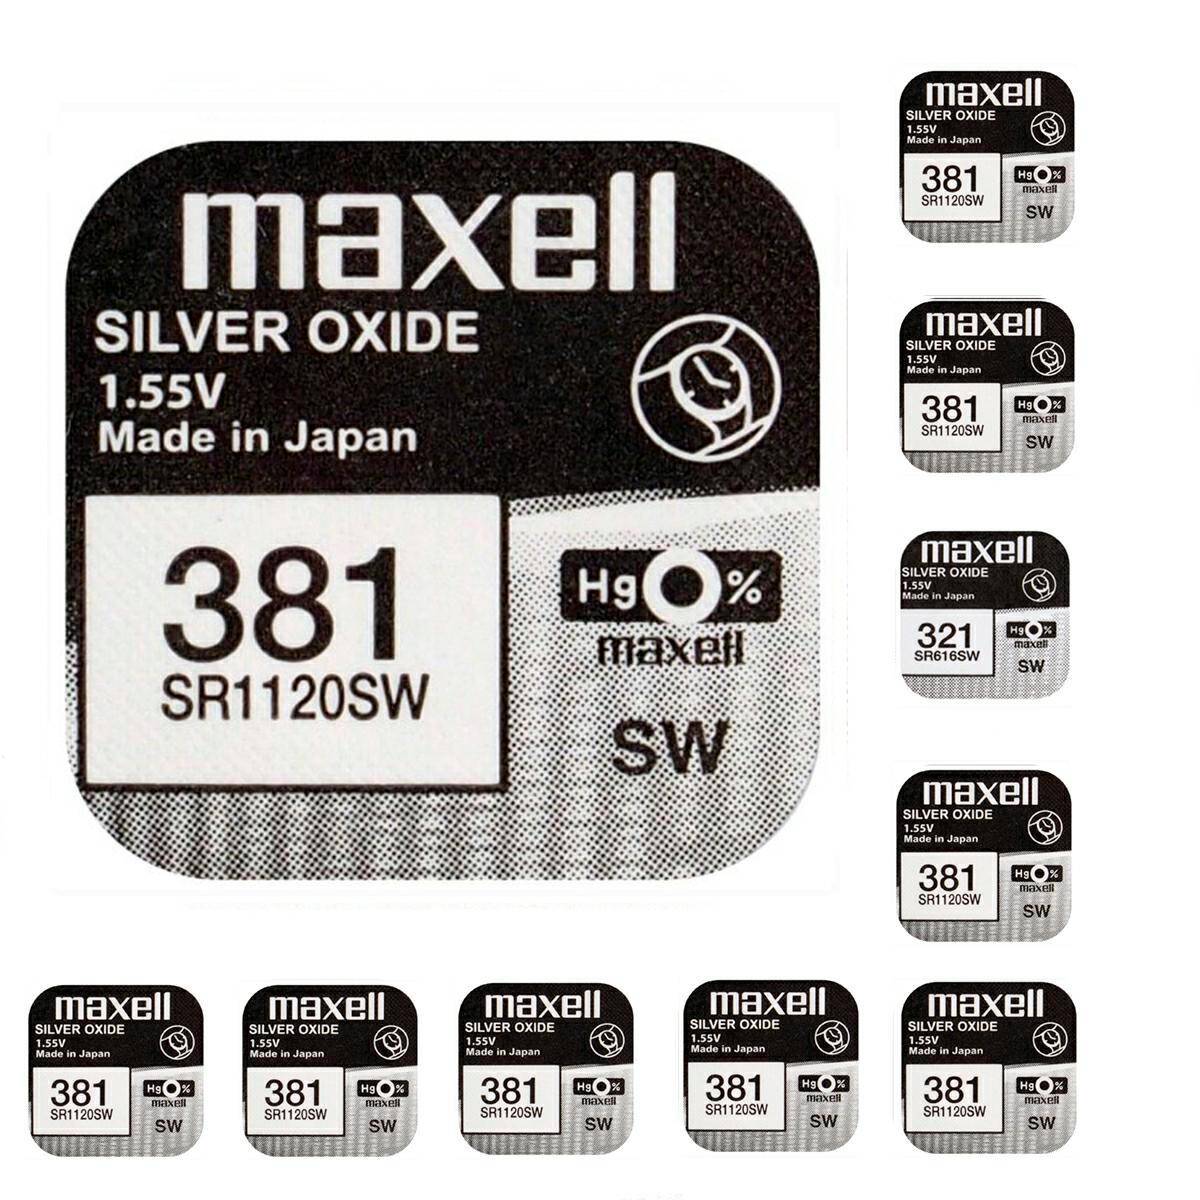 Batterie Maxell 381 SR1120SW 1,55V 10 stck